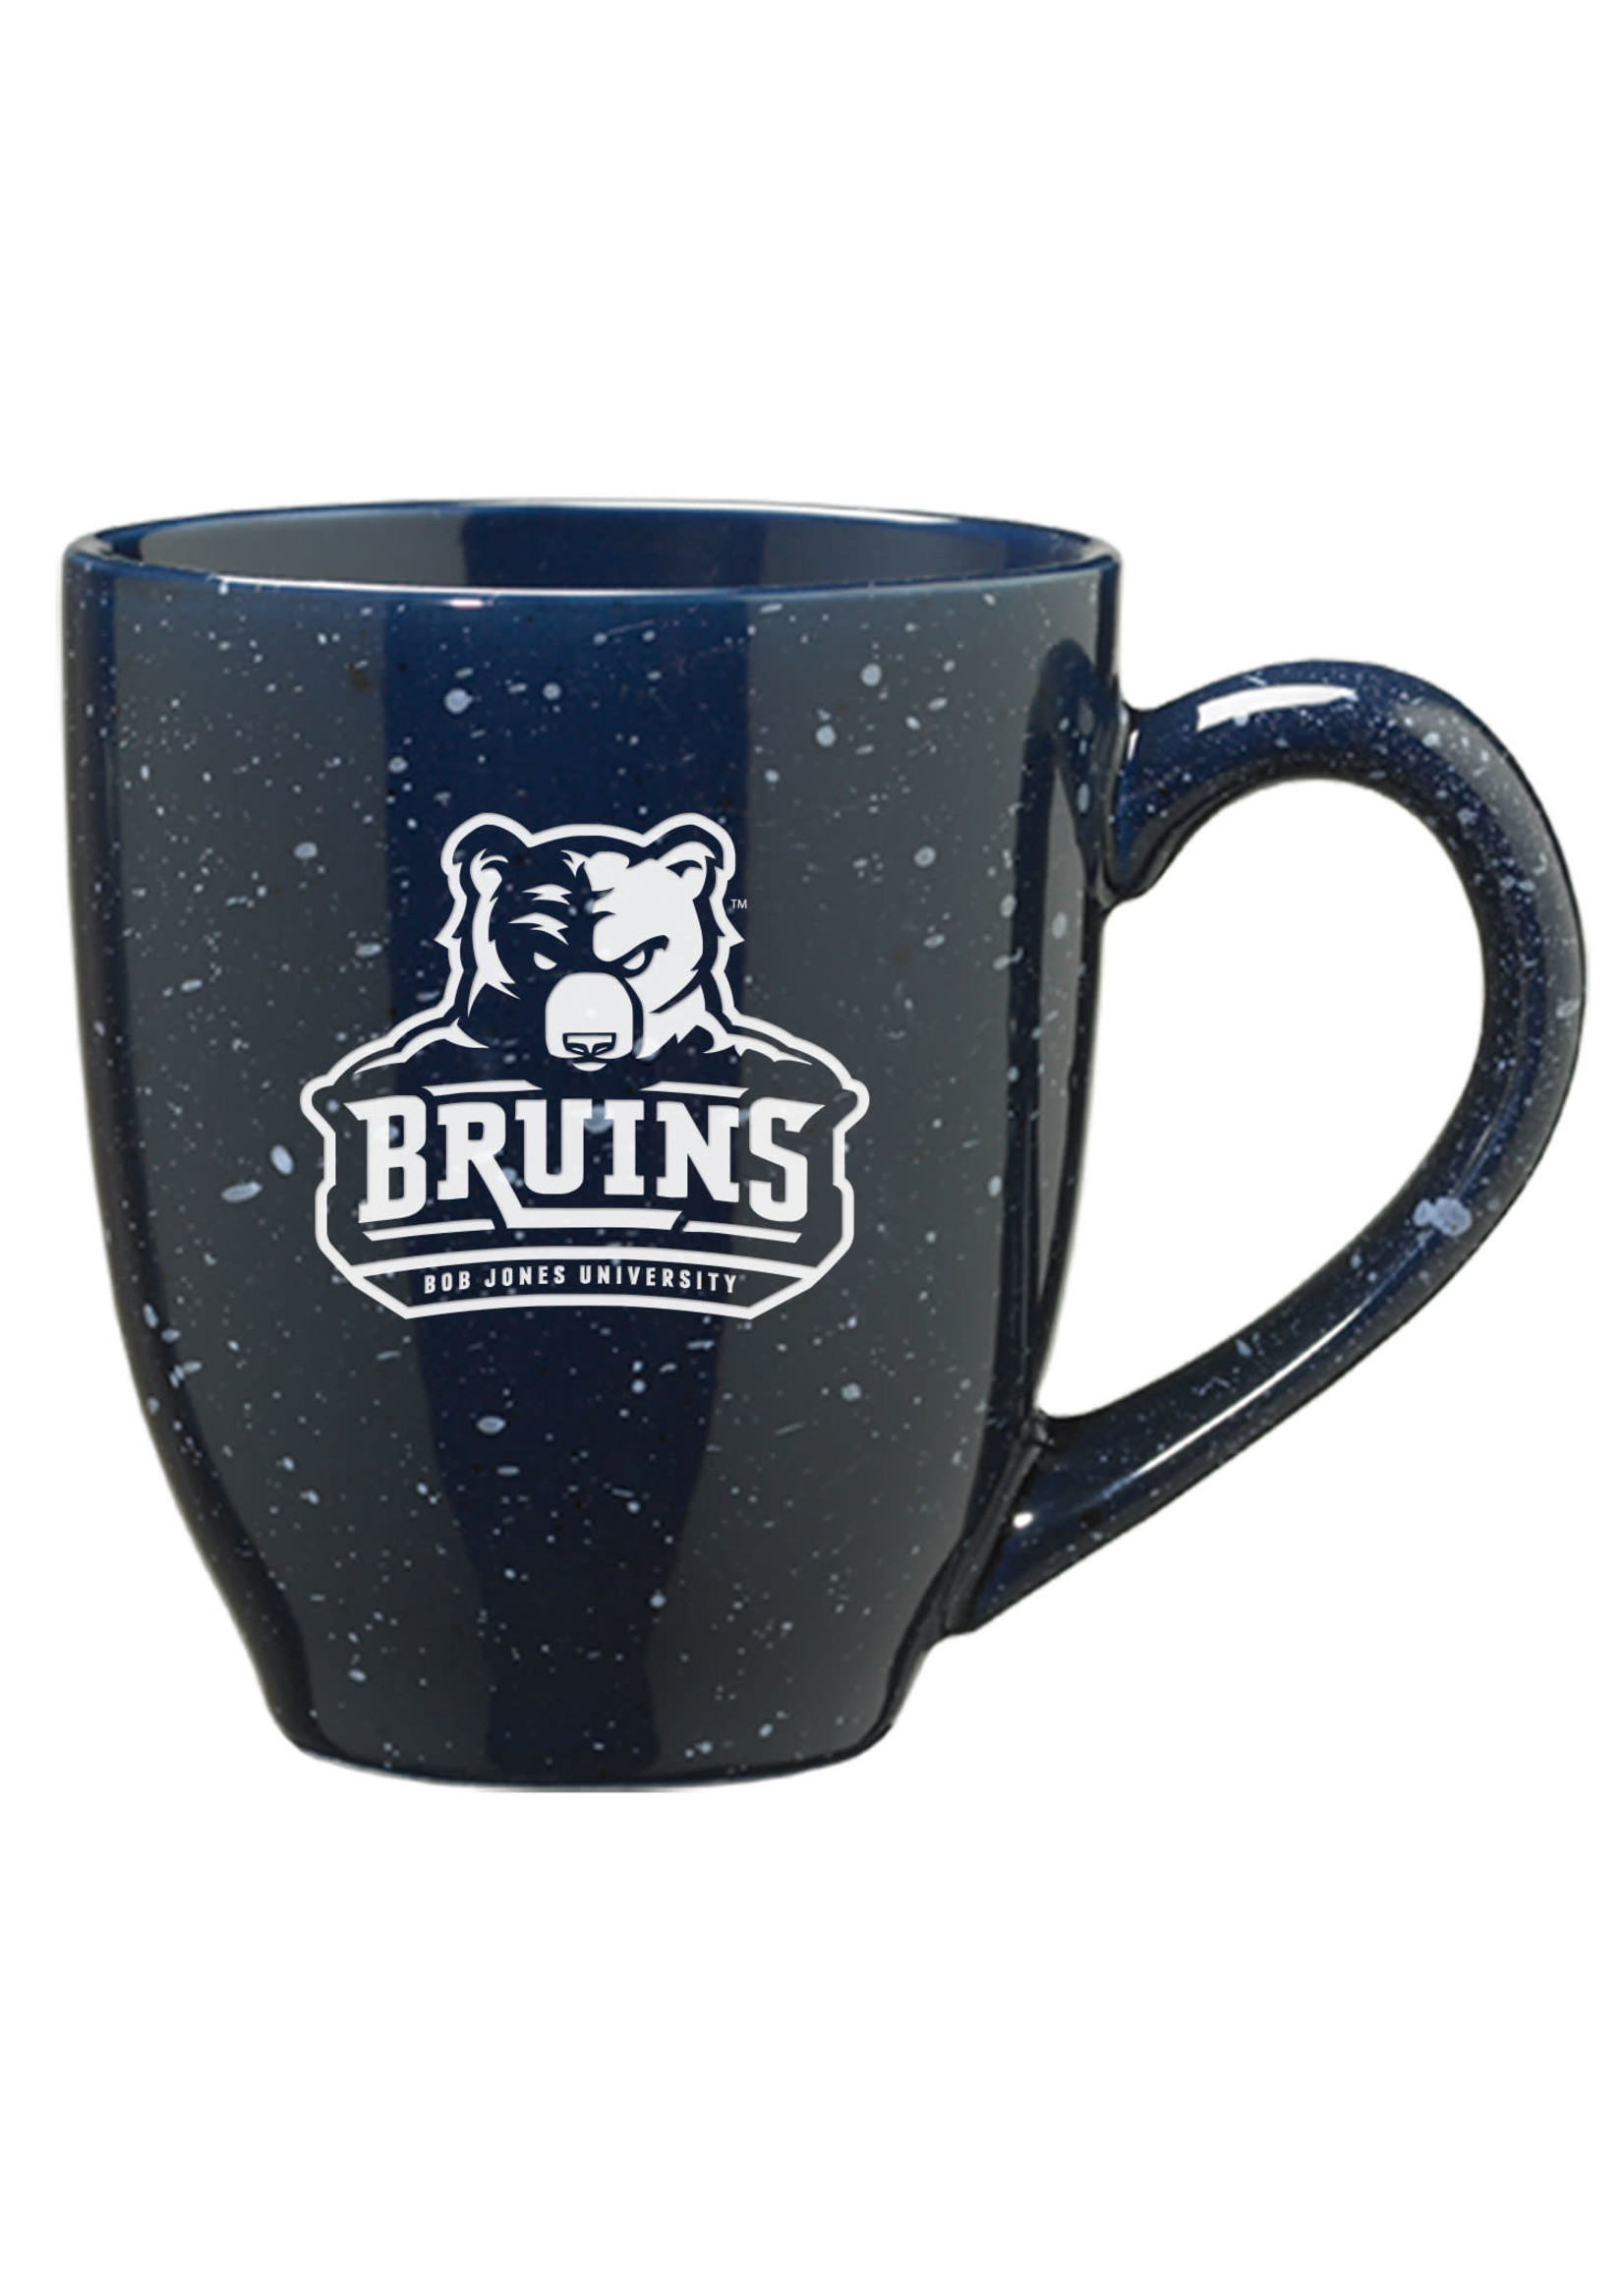 Bruins Ceramic Bistro Mug